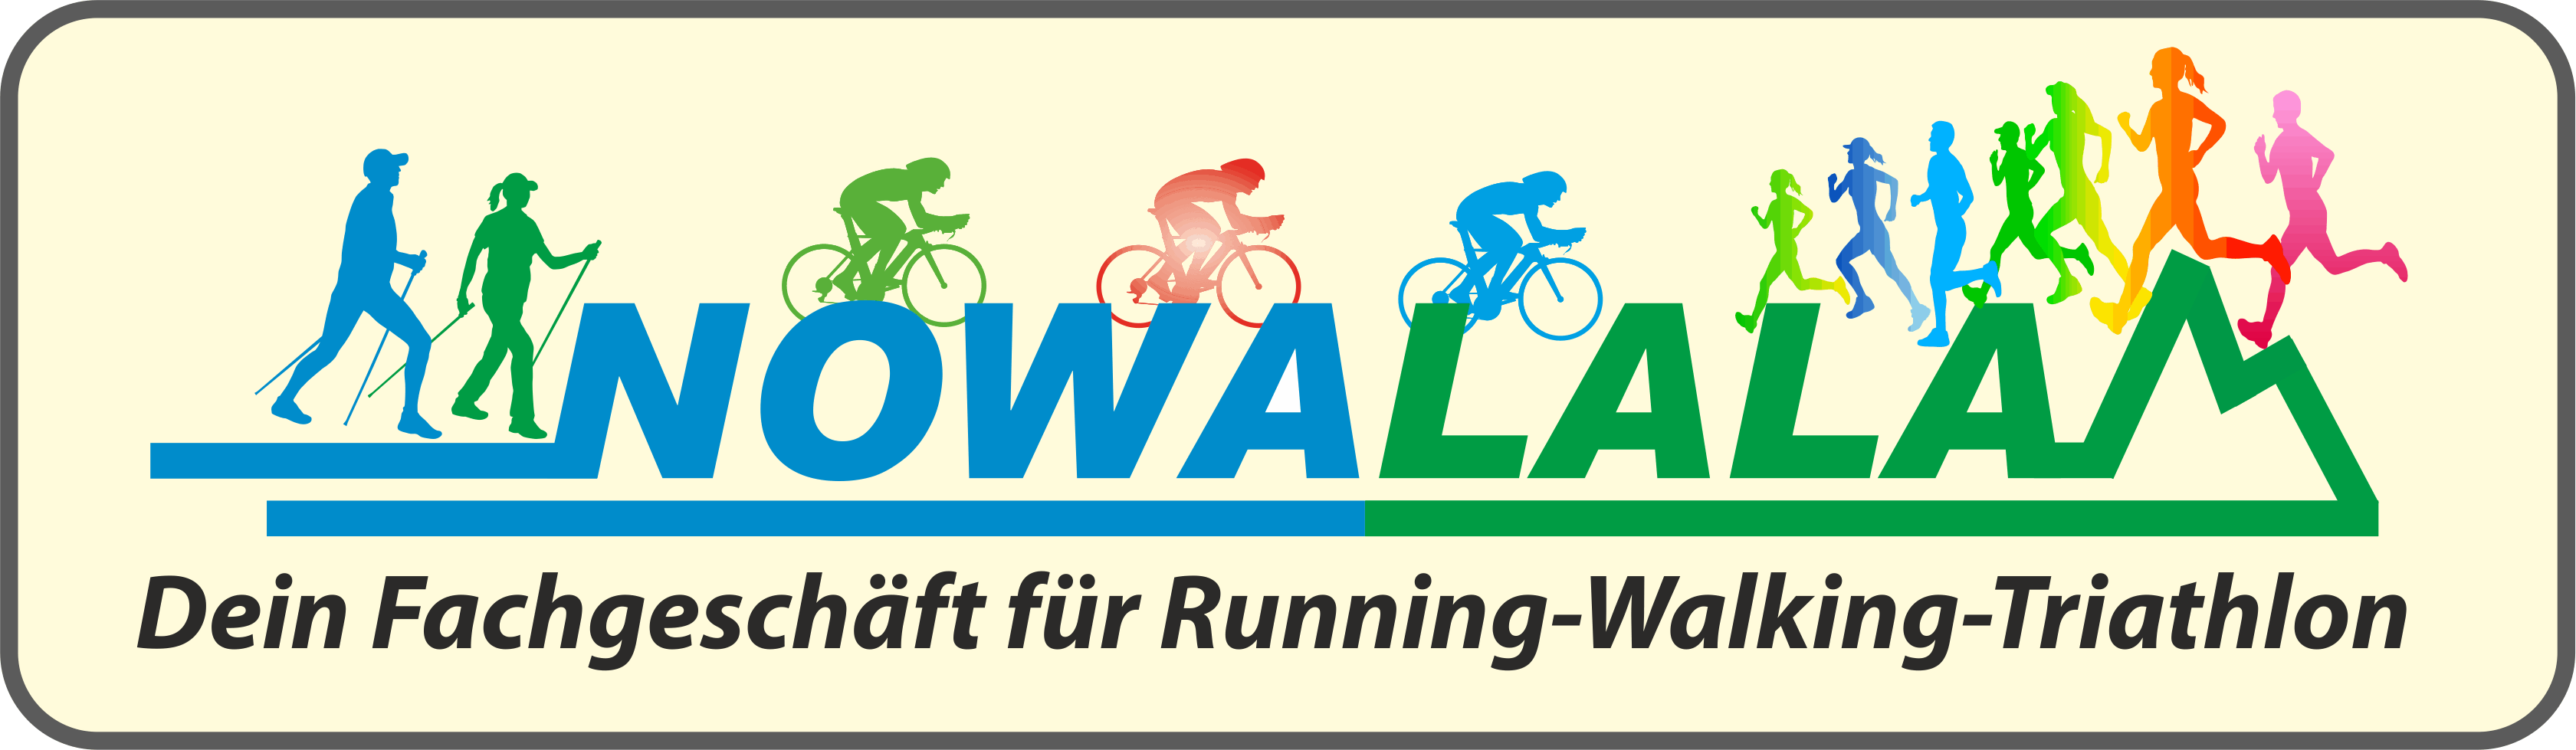 Nowalala-Dein Fachgeschäft für Running-Walking-Triathlon